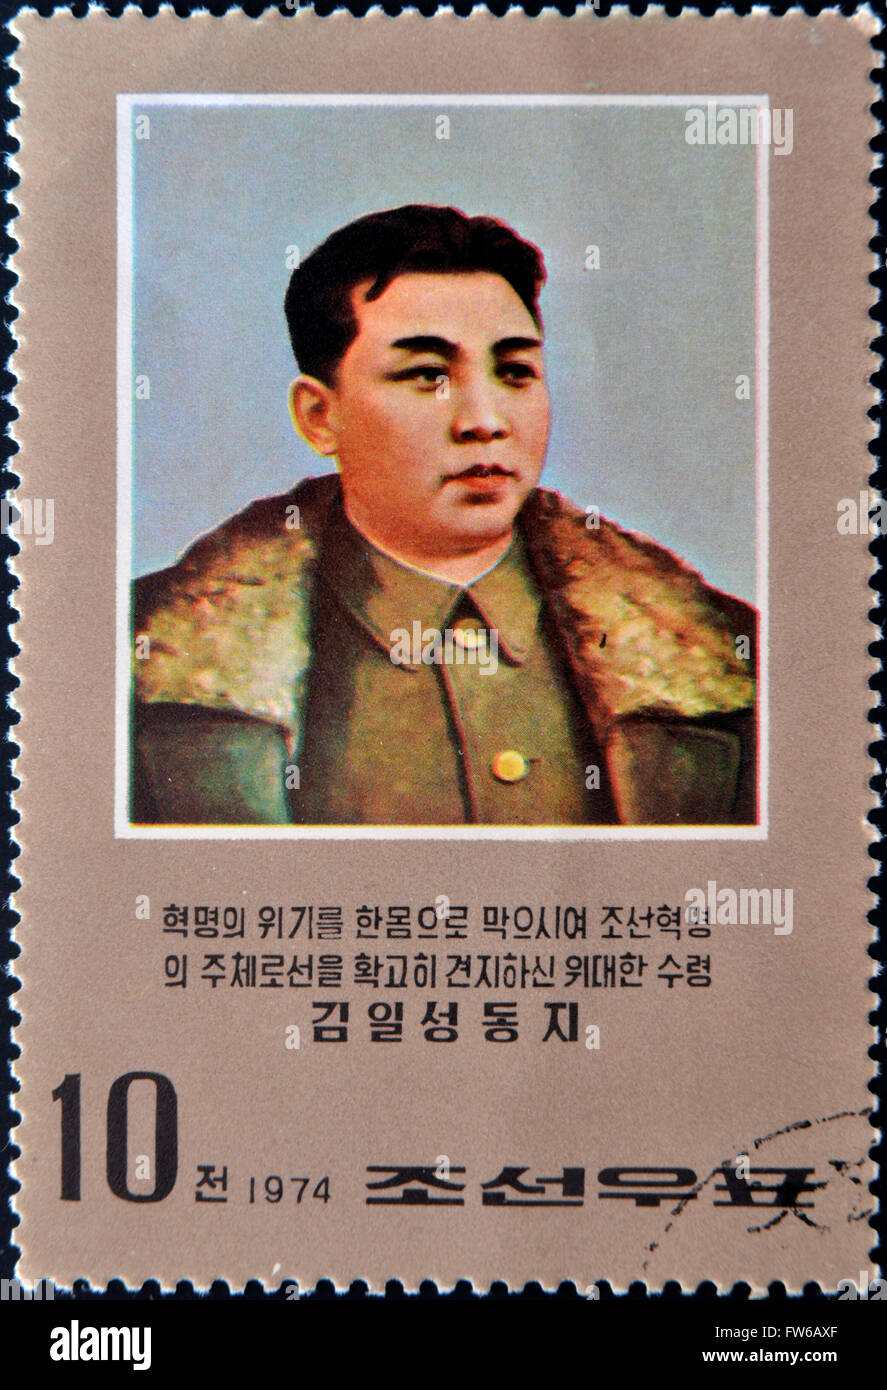 NORTH KOREA - CIRCA 1974: stamp printed in dpr Korea shows Kim Il sung, circa 1974. Stock Photo